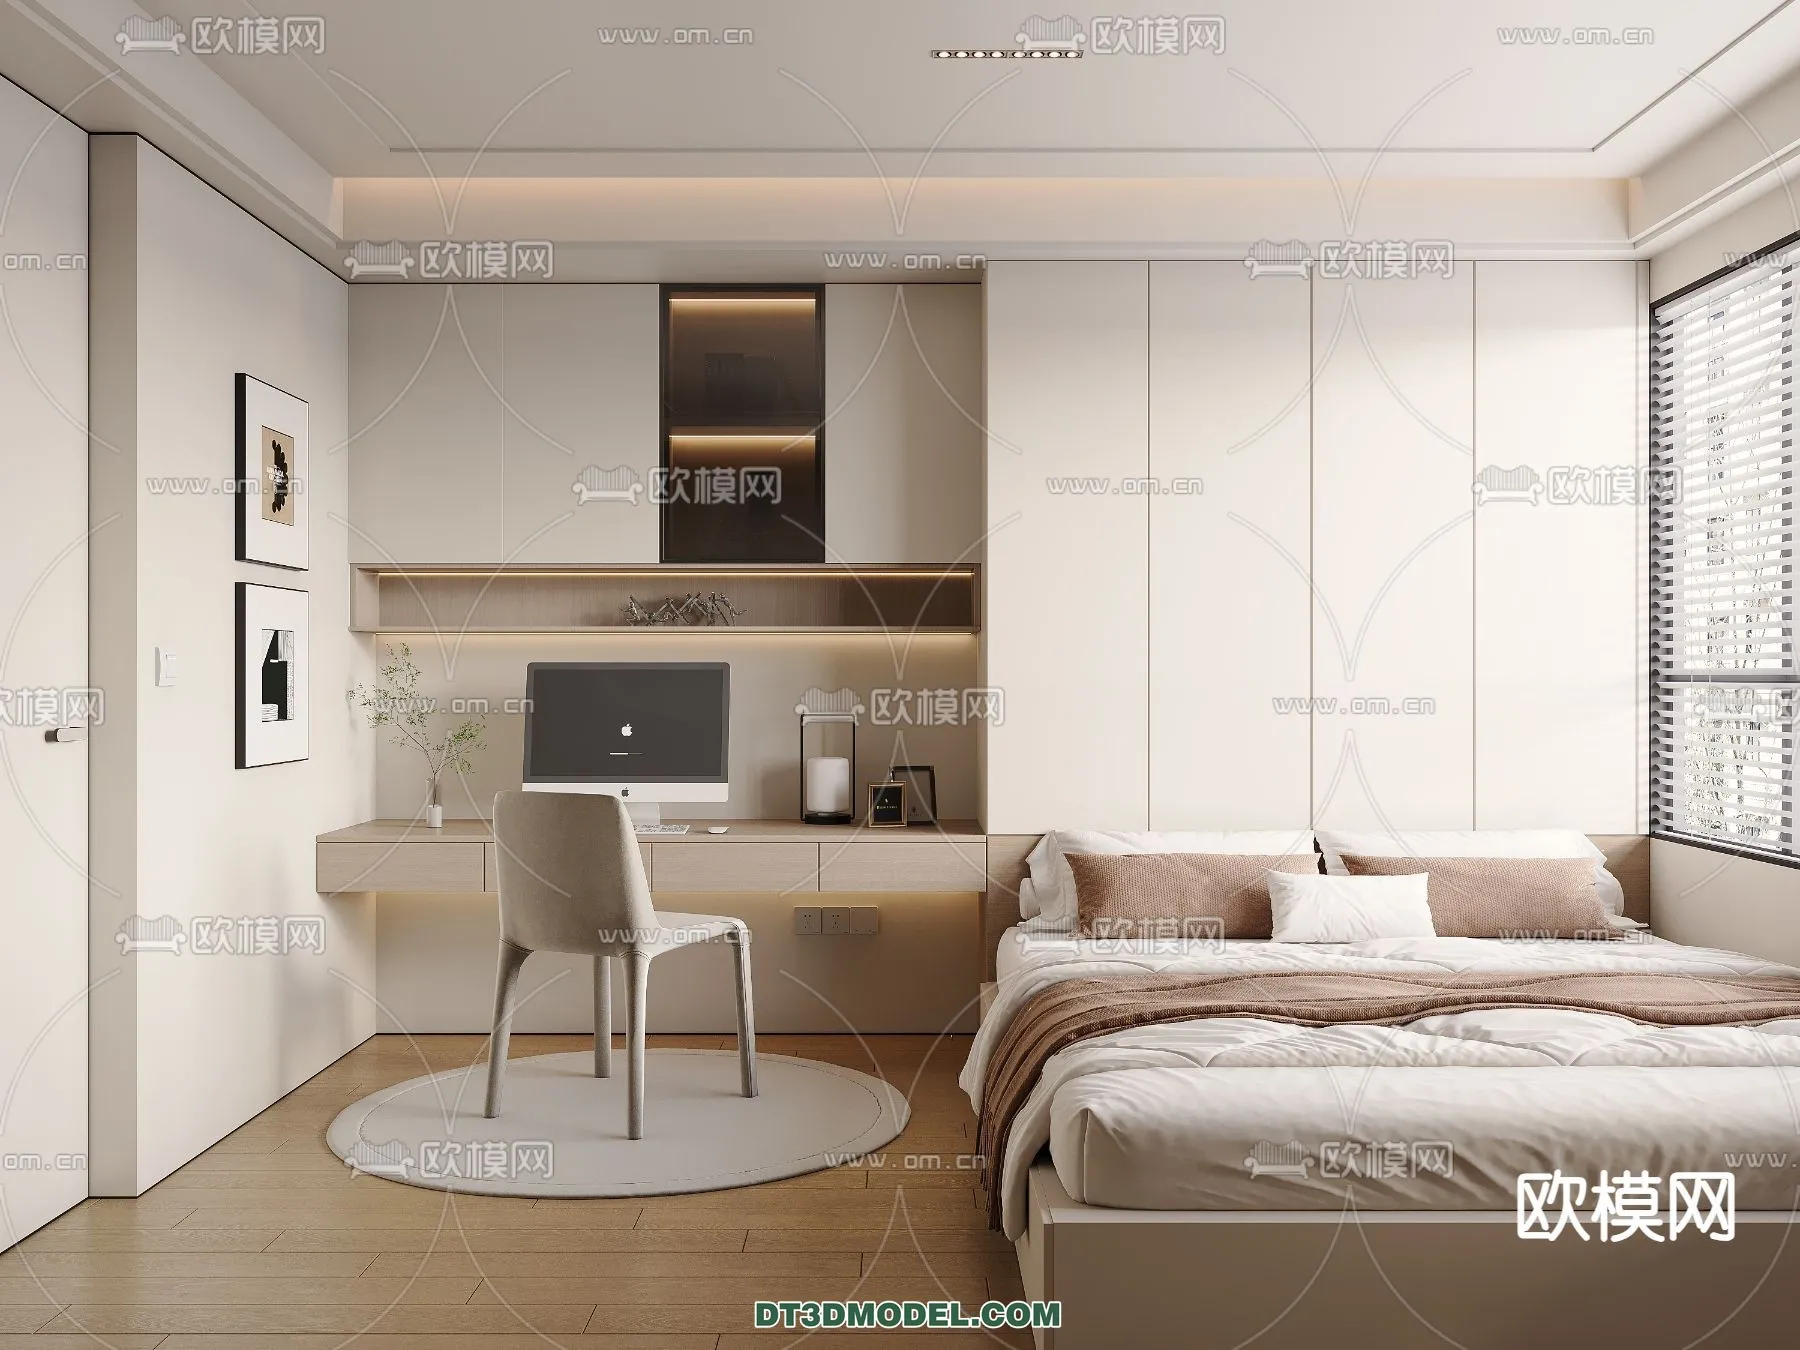 Tatami Bedroom – Japan Bedroom – 3D Scene – 050